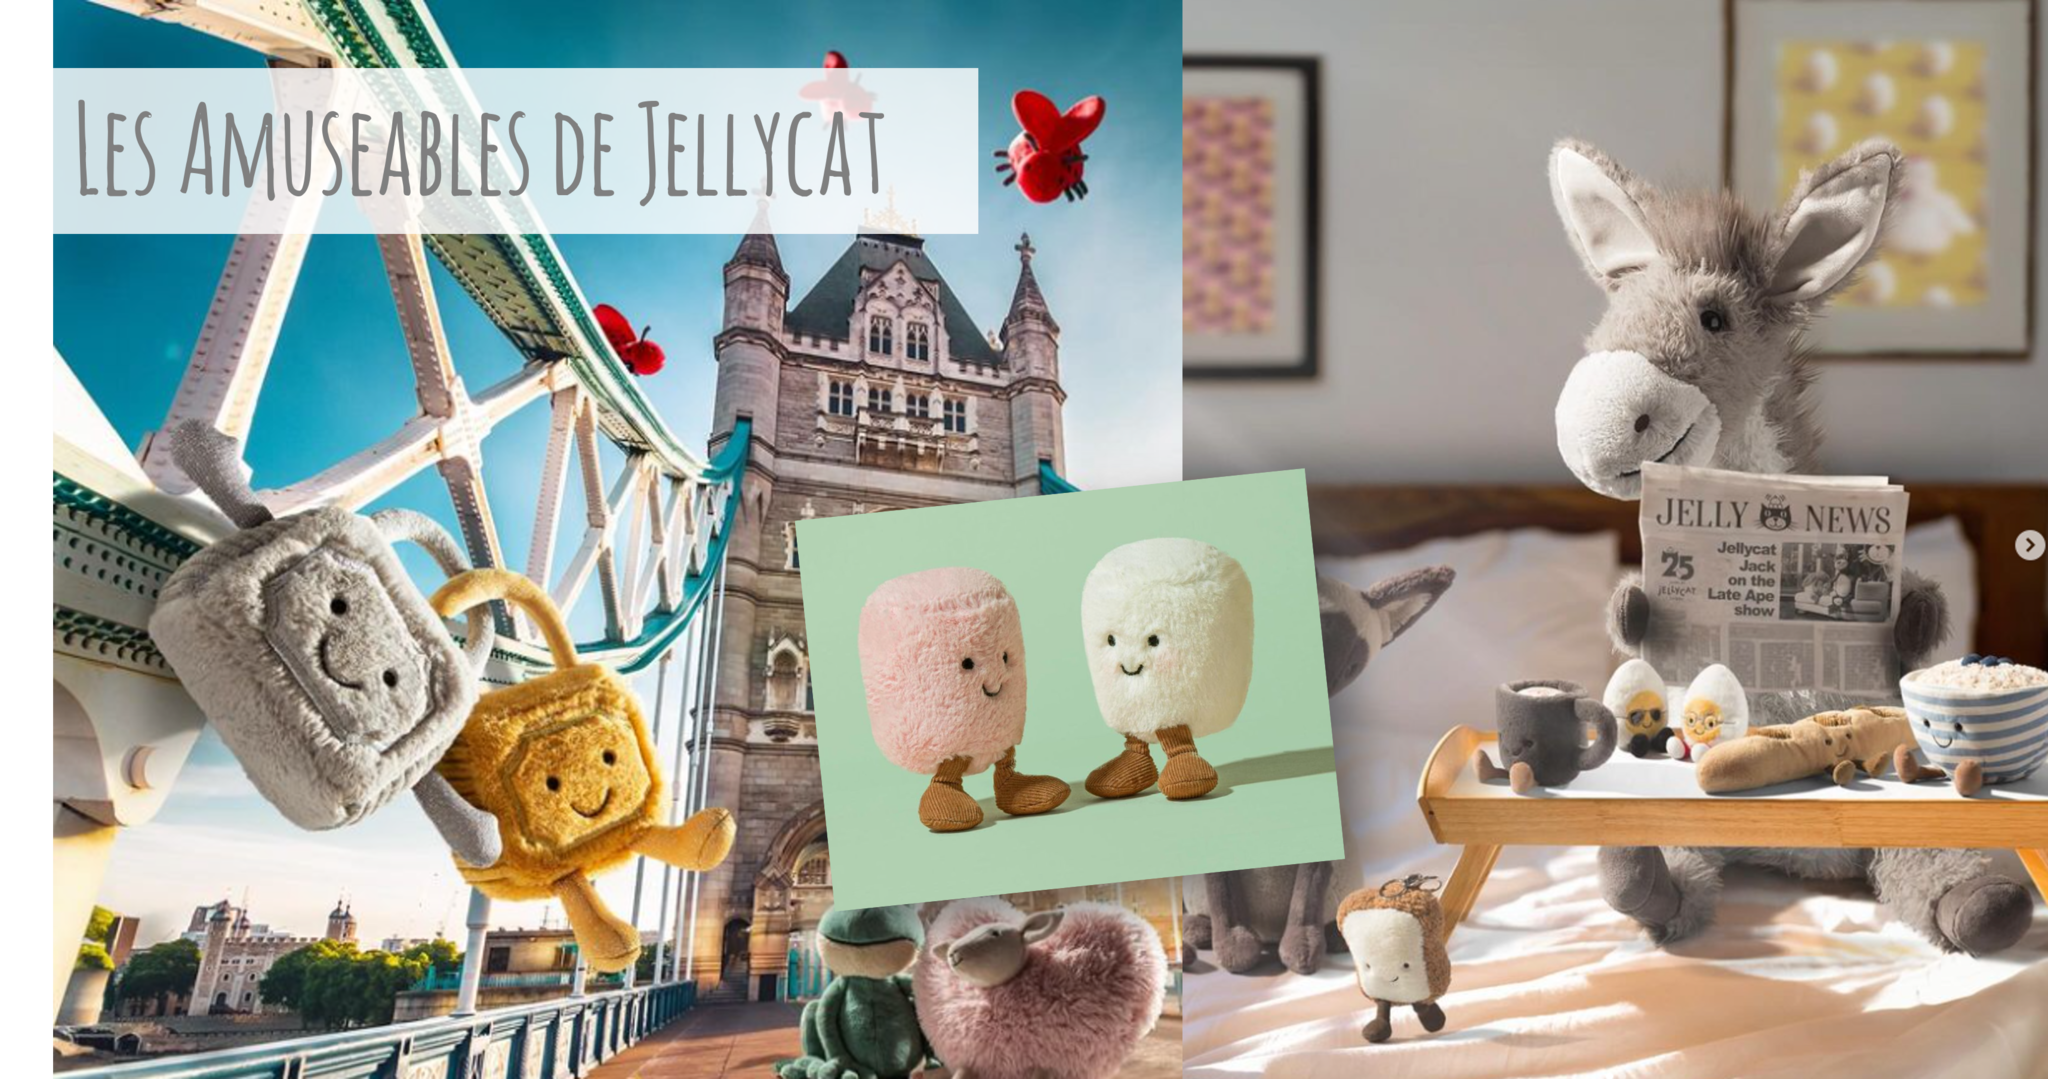 Les Amuseables de Jellycat